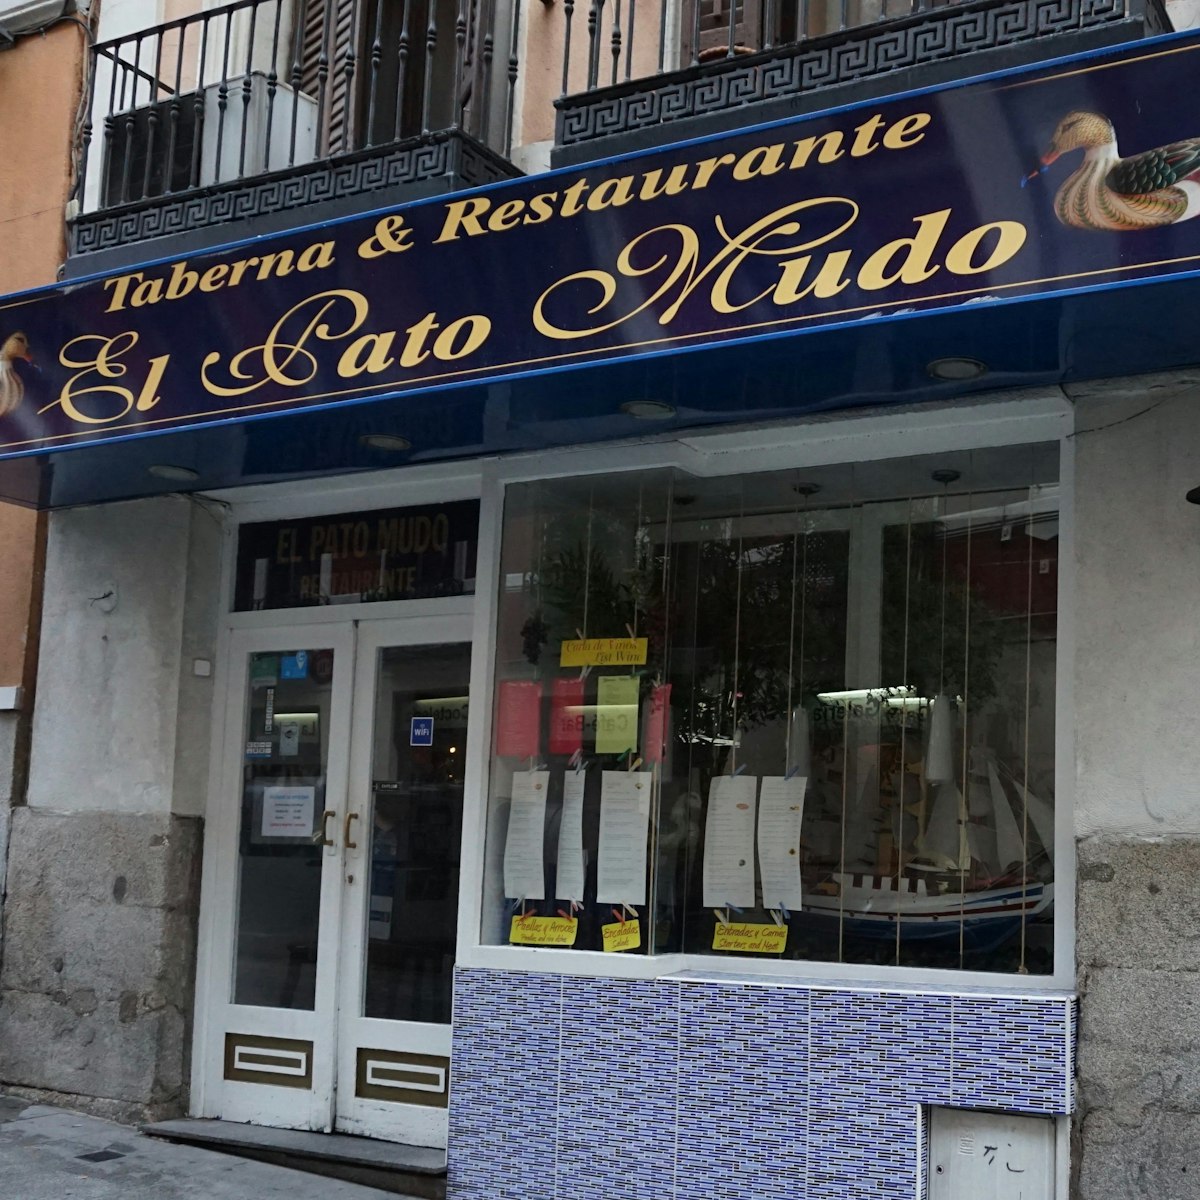 El Pato Mudo's facade in the center of Madrid.